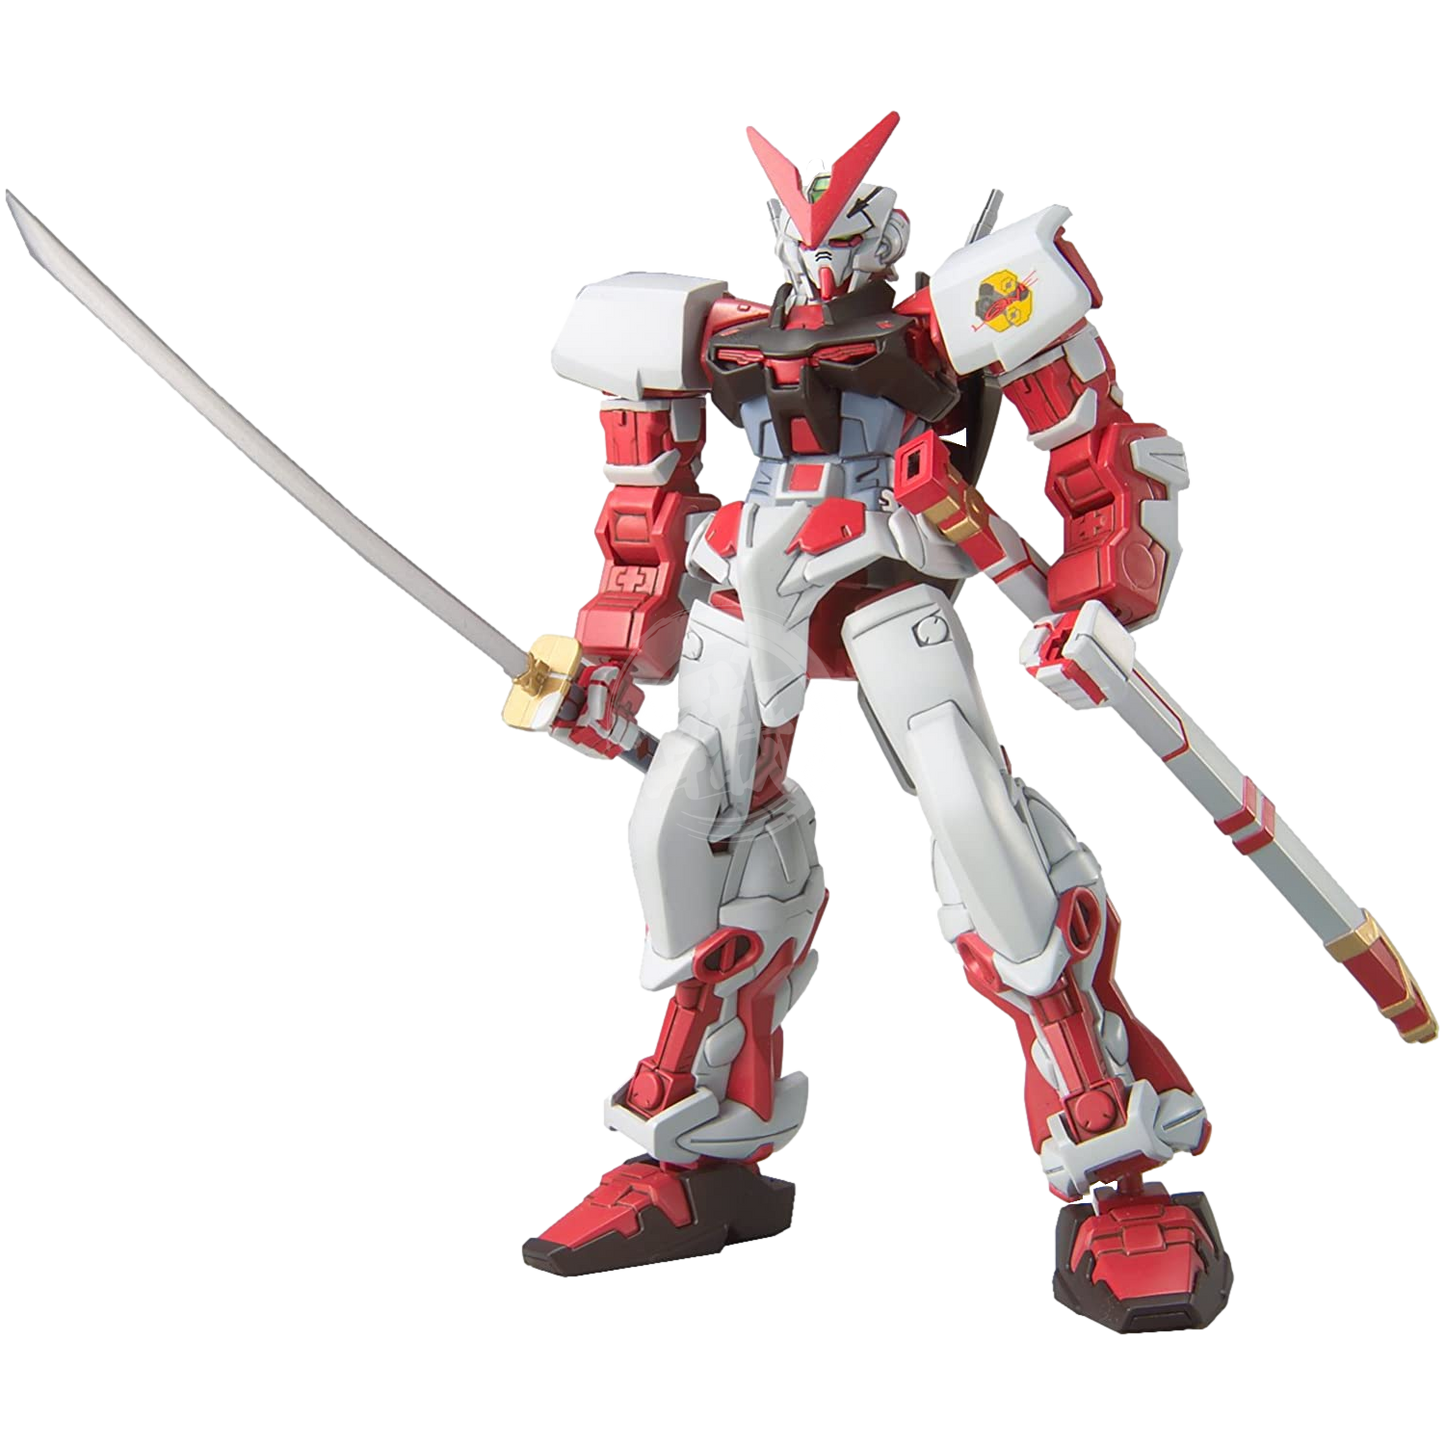 HG Gundam Astray Red Frame - ShokuninGunpla